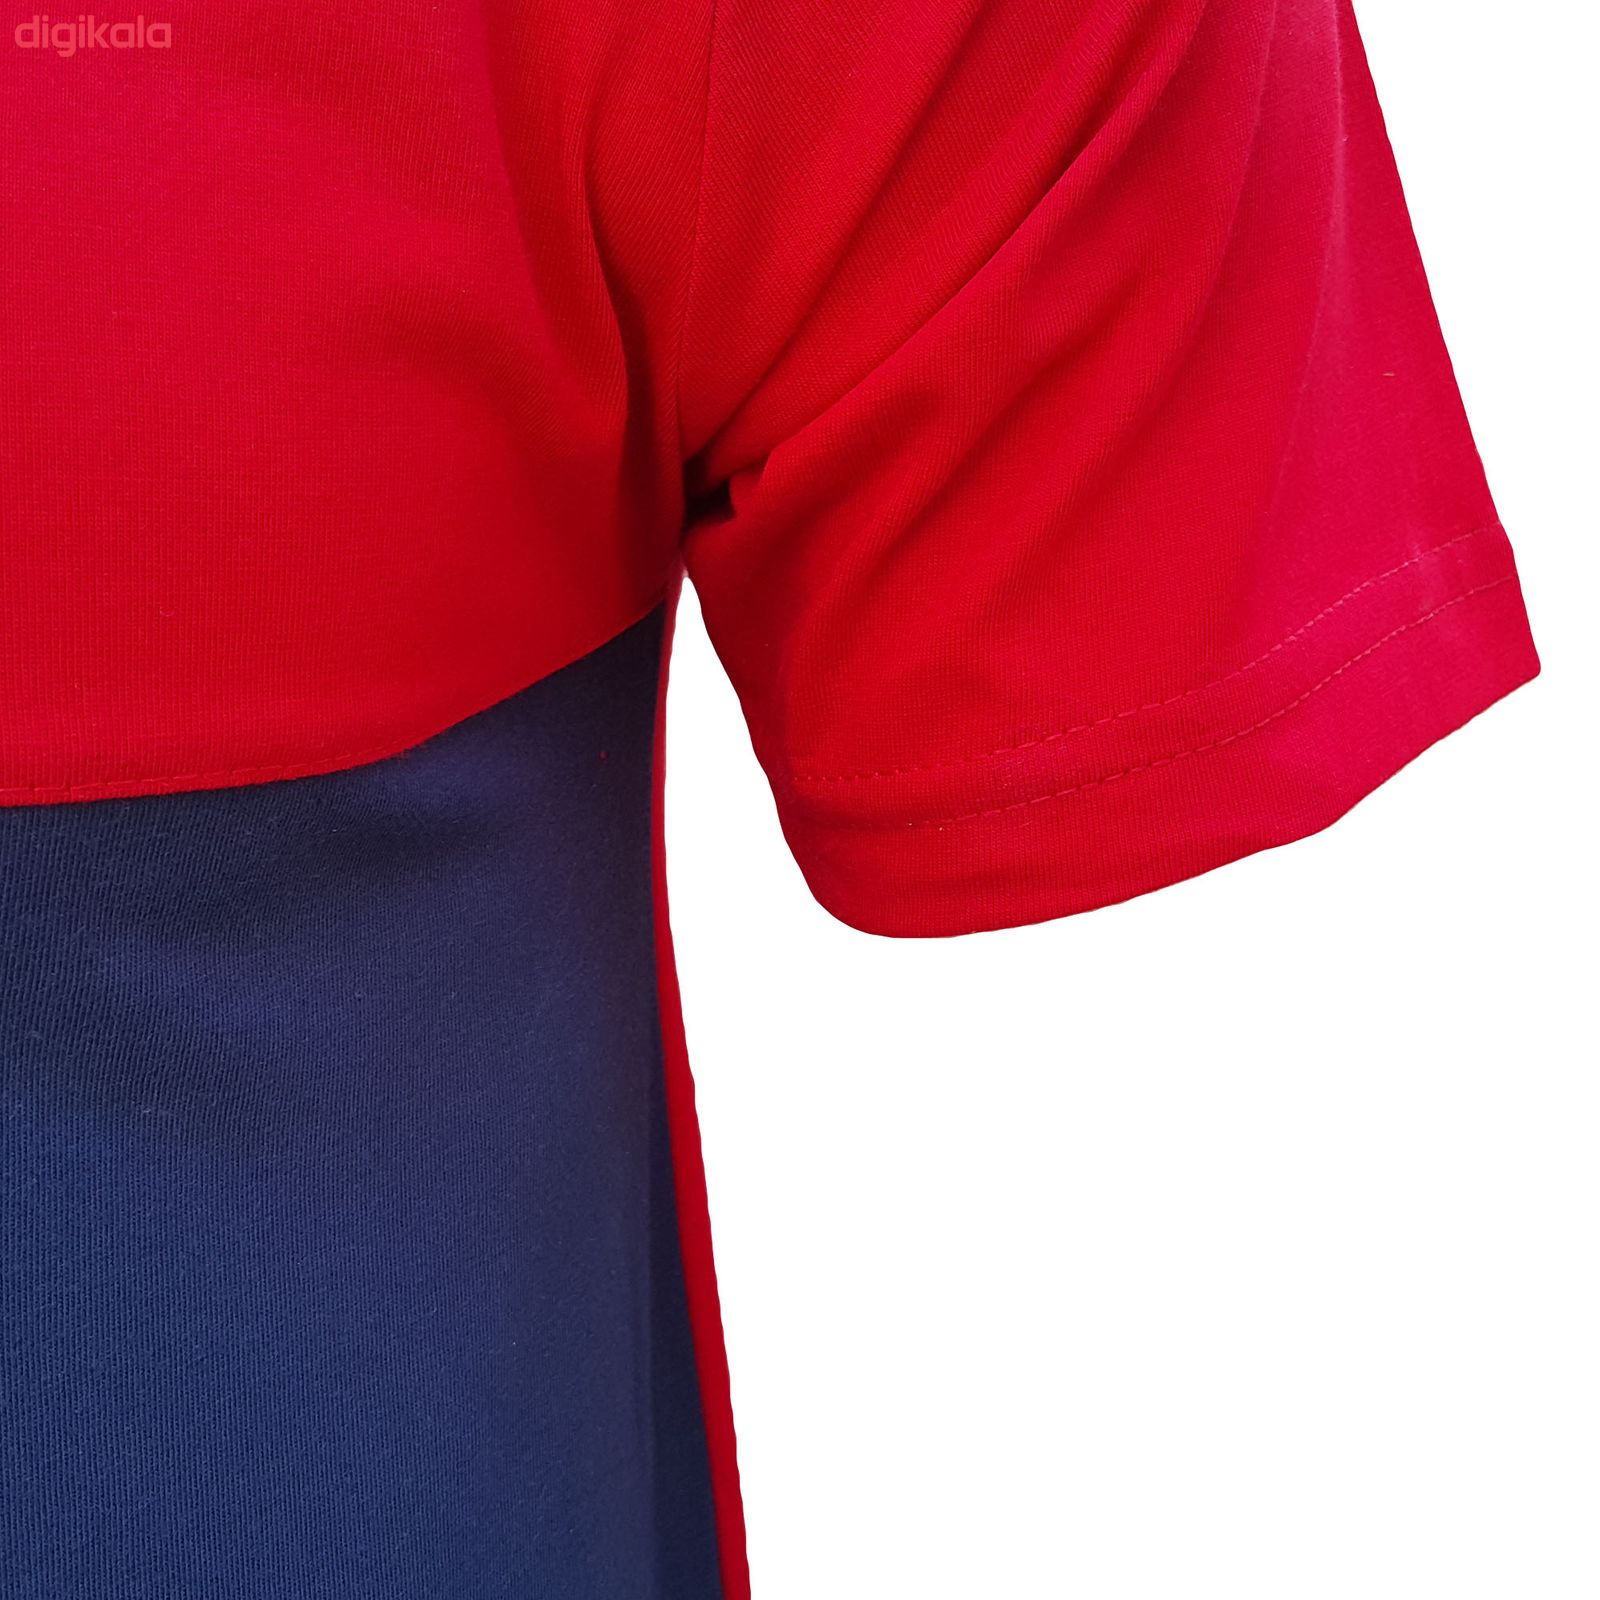  تی شرت آستین کوتاه مردانه طرح آژاکس کد A255G رنگ قرمز